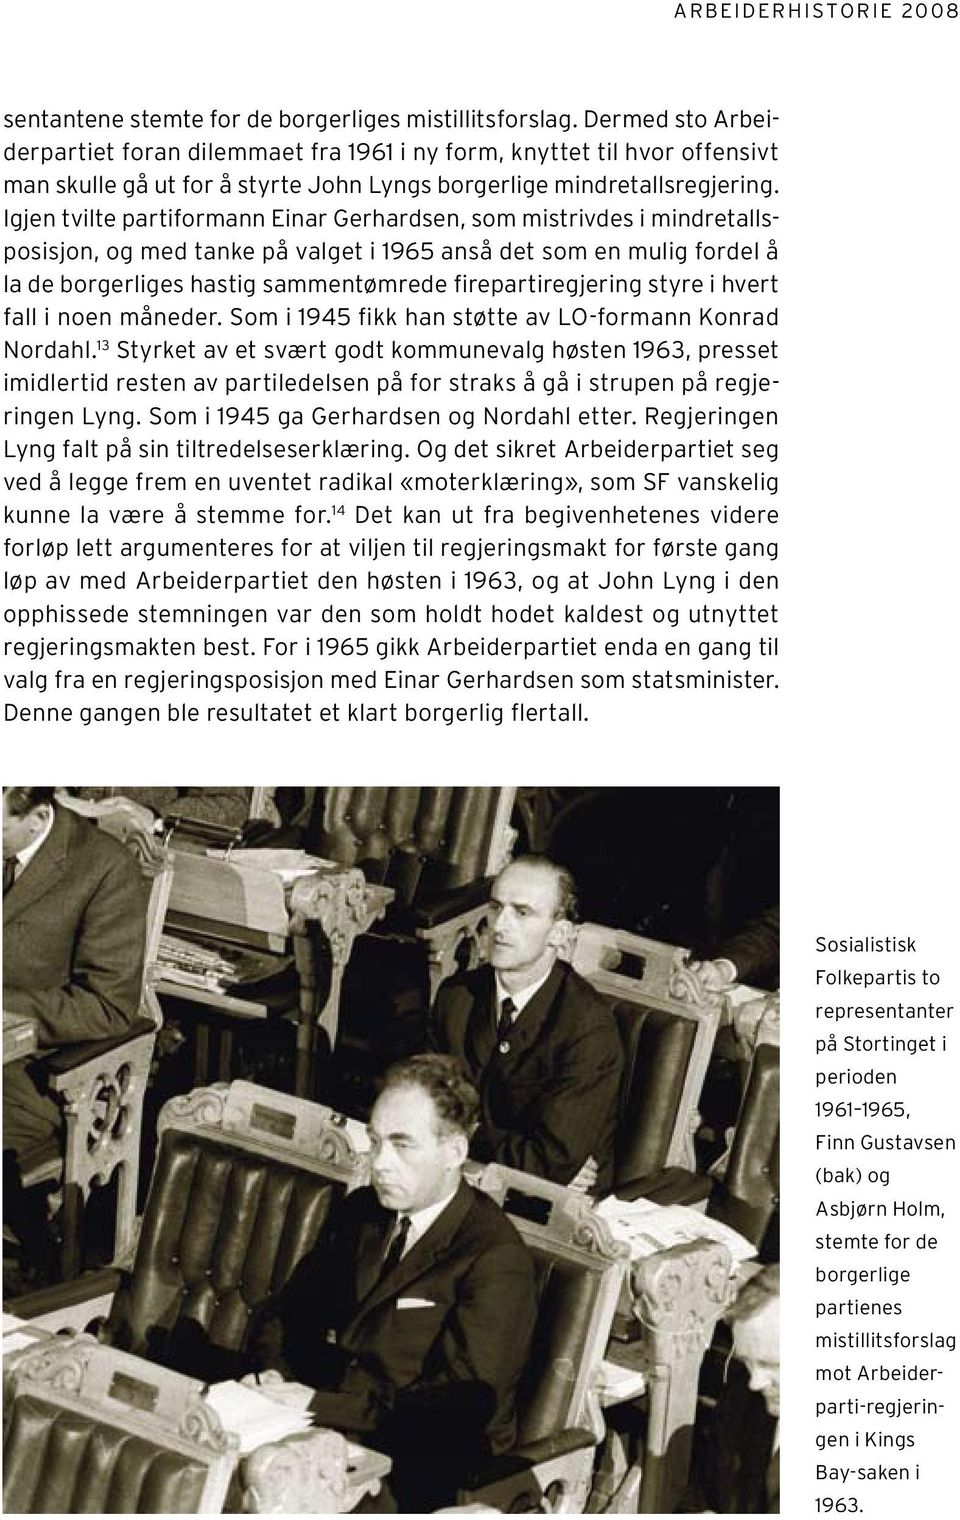 Igjen tvilte partiformann Einar Gerhardsen, som mistrivdes i mindretallsposisjon, og med tanke på valget i 1965 anså det som en mulig fordel å la de borgerliges hastig sammentømrede